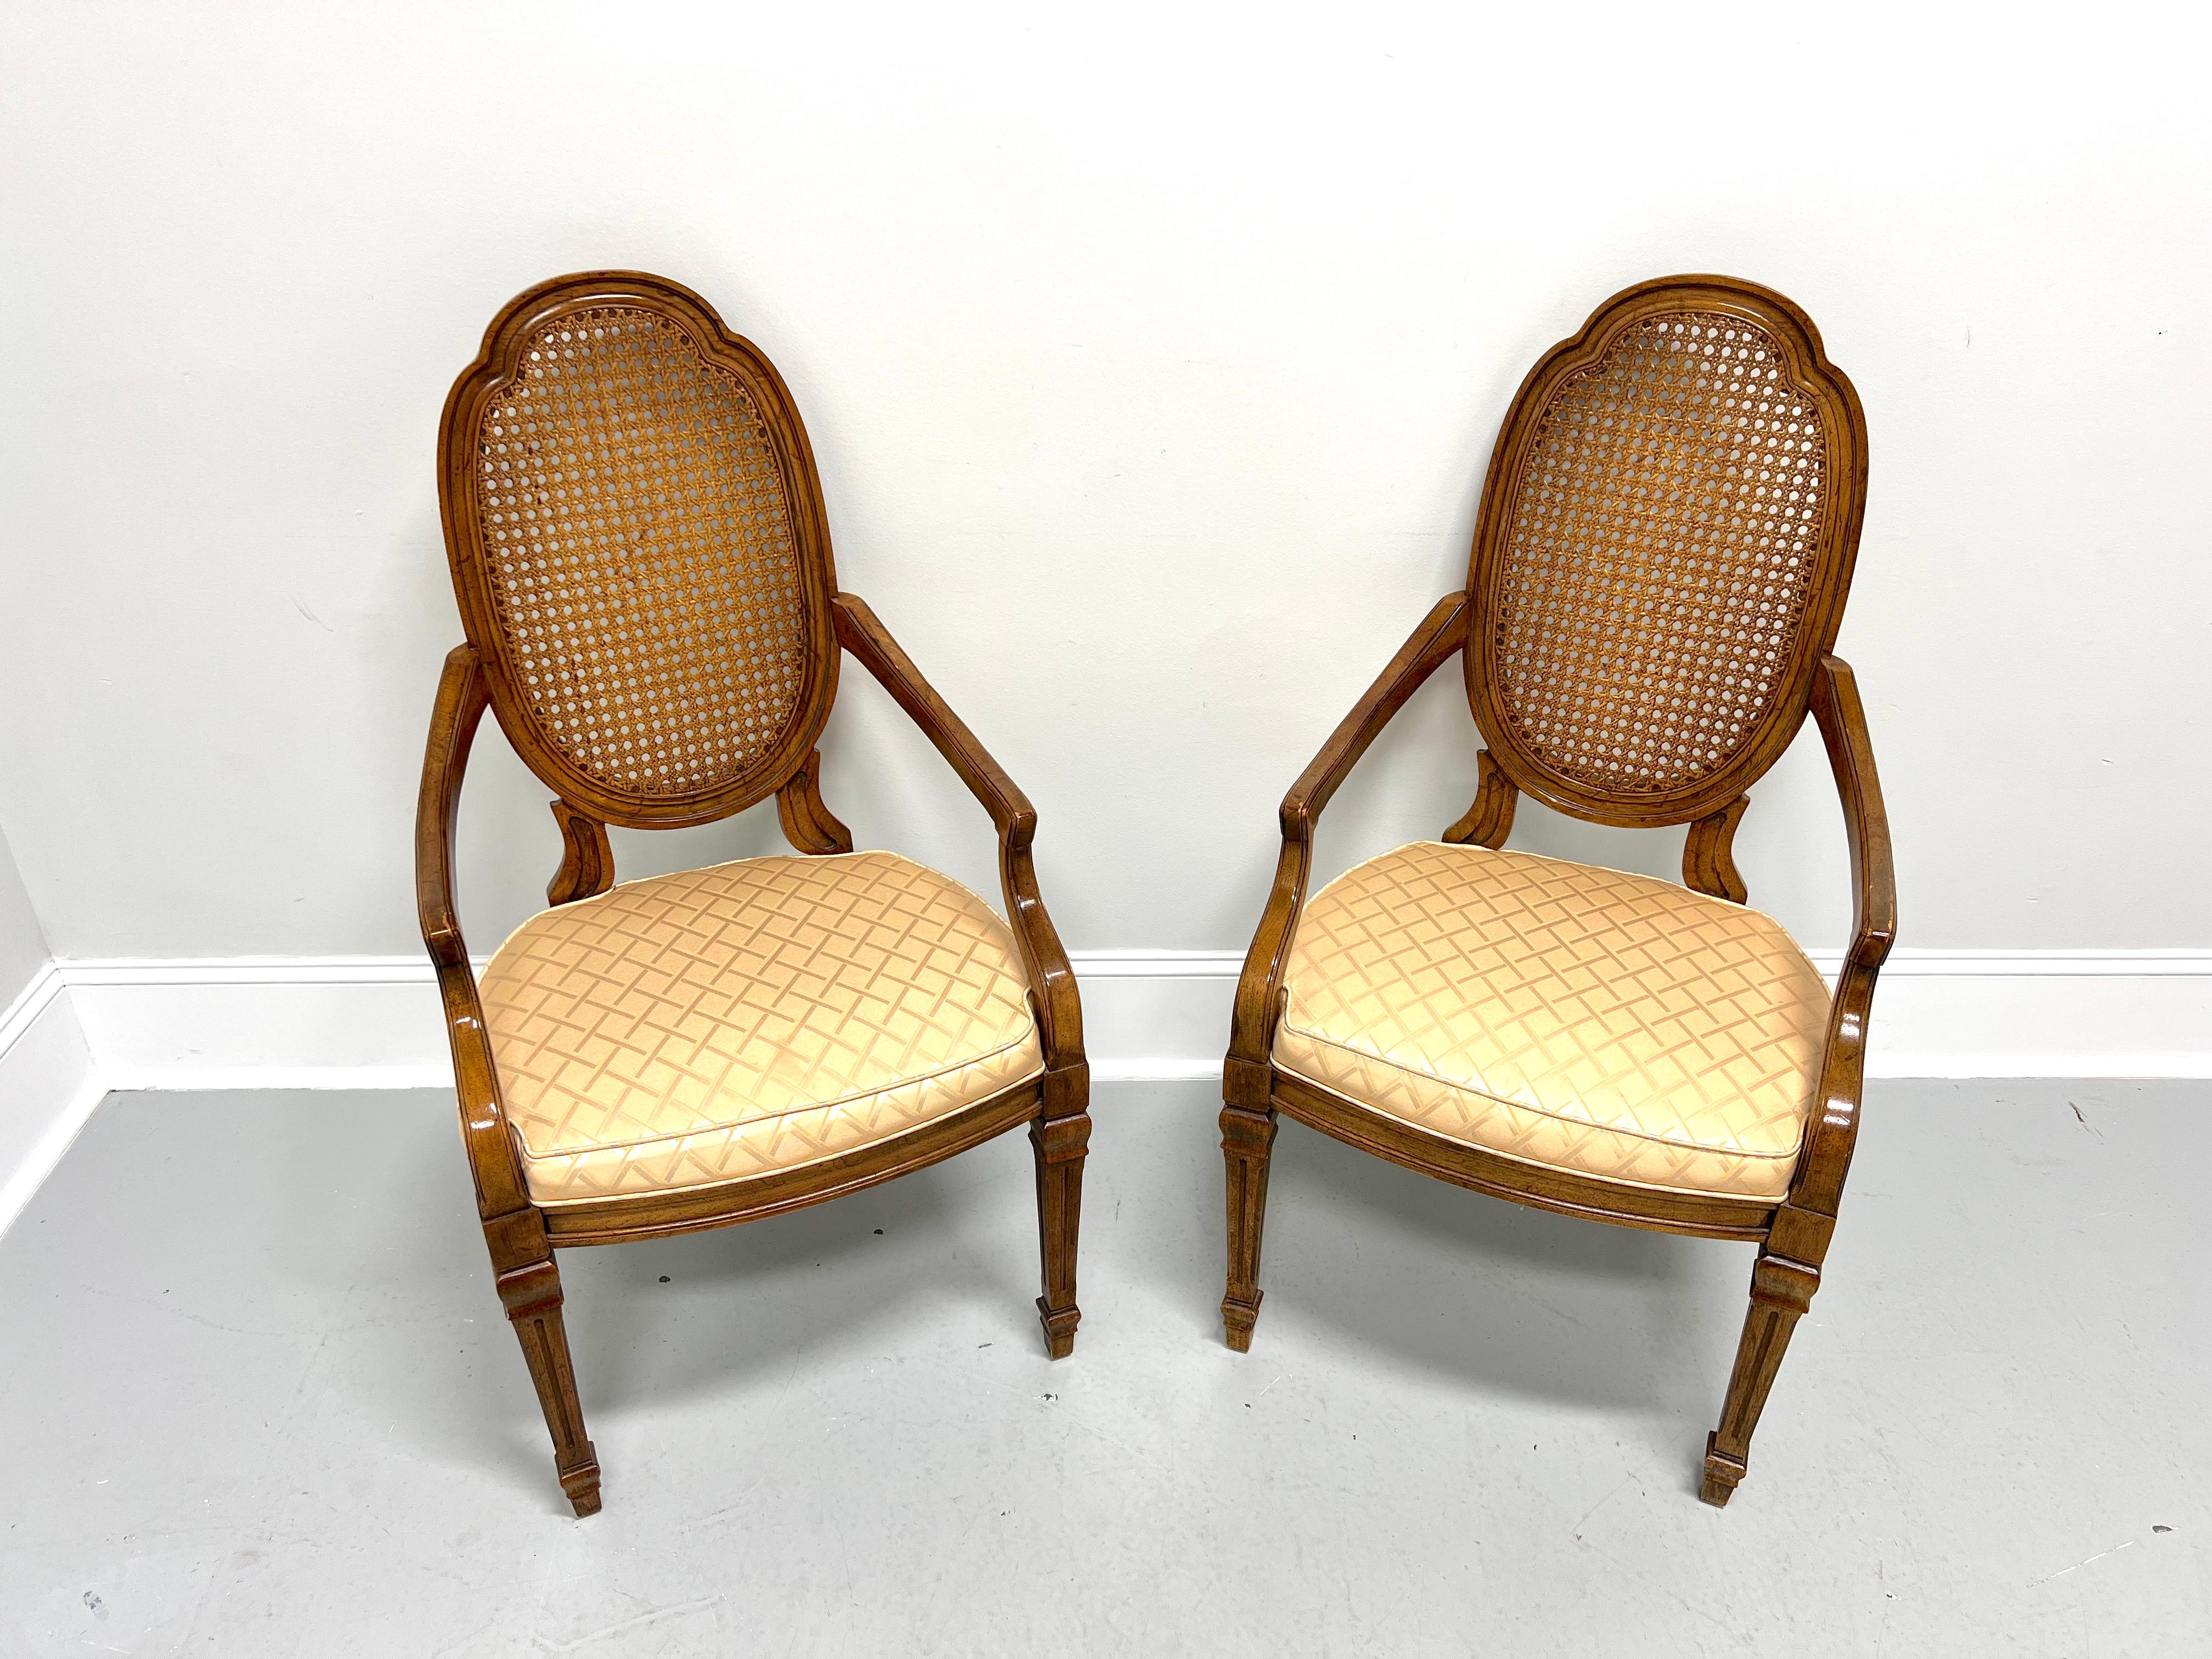 Paire de fauteuils de salle à manger de style Louis XVI par Drexel Heritage. En noyer avec une finition légèrement vieillie, le dossier est sculpté en forme de bouclier ovale, les accoudoirs sont droits et inclinés avec des supports courbés, les